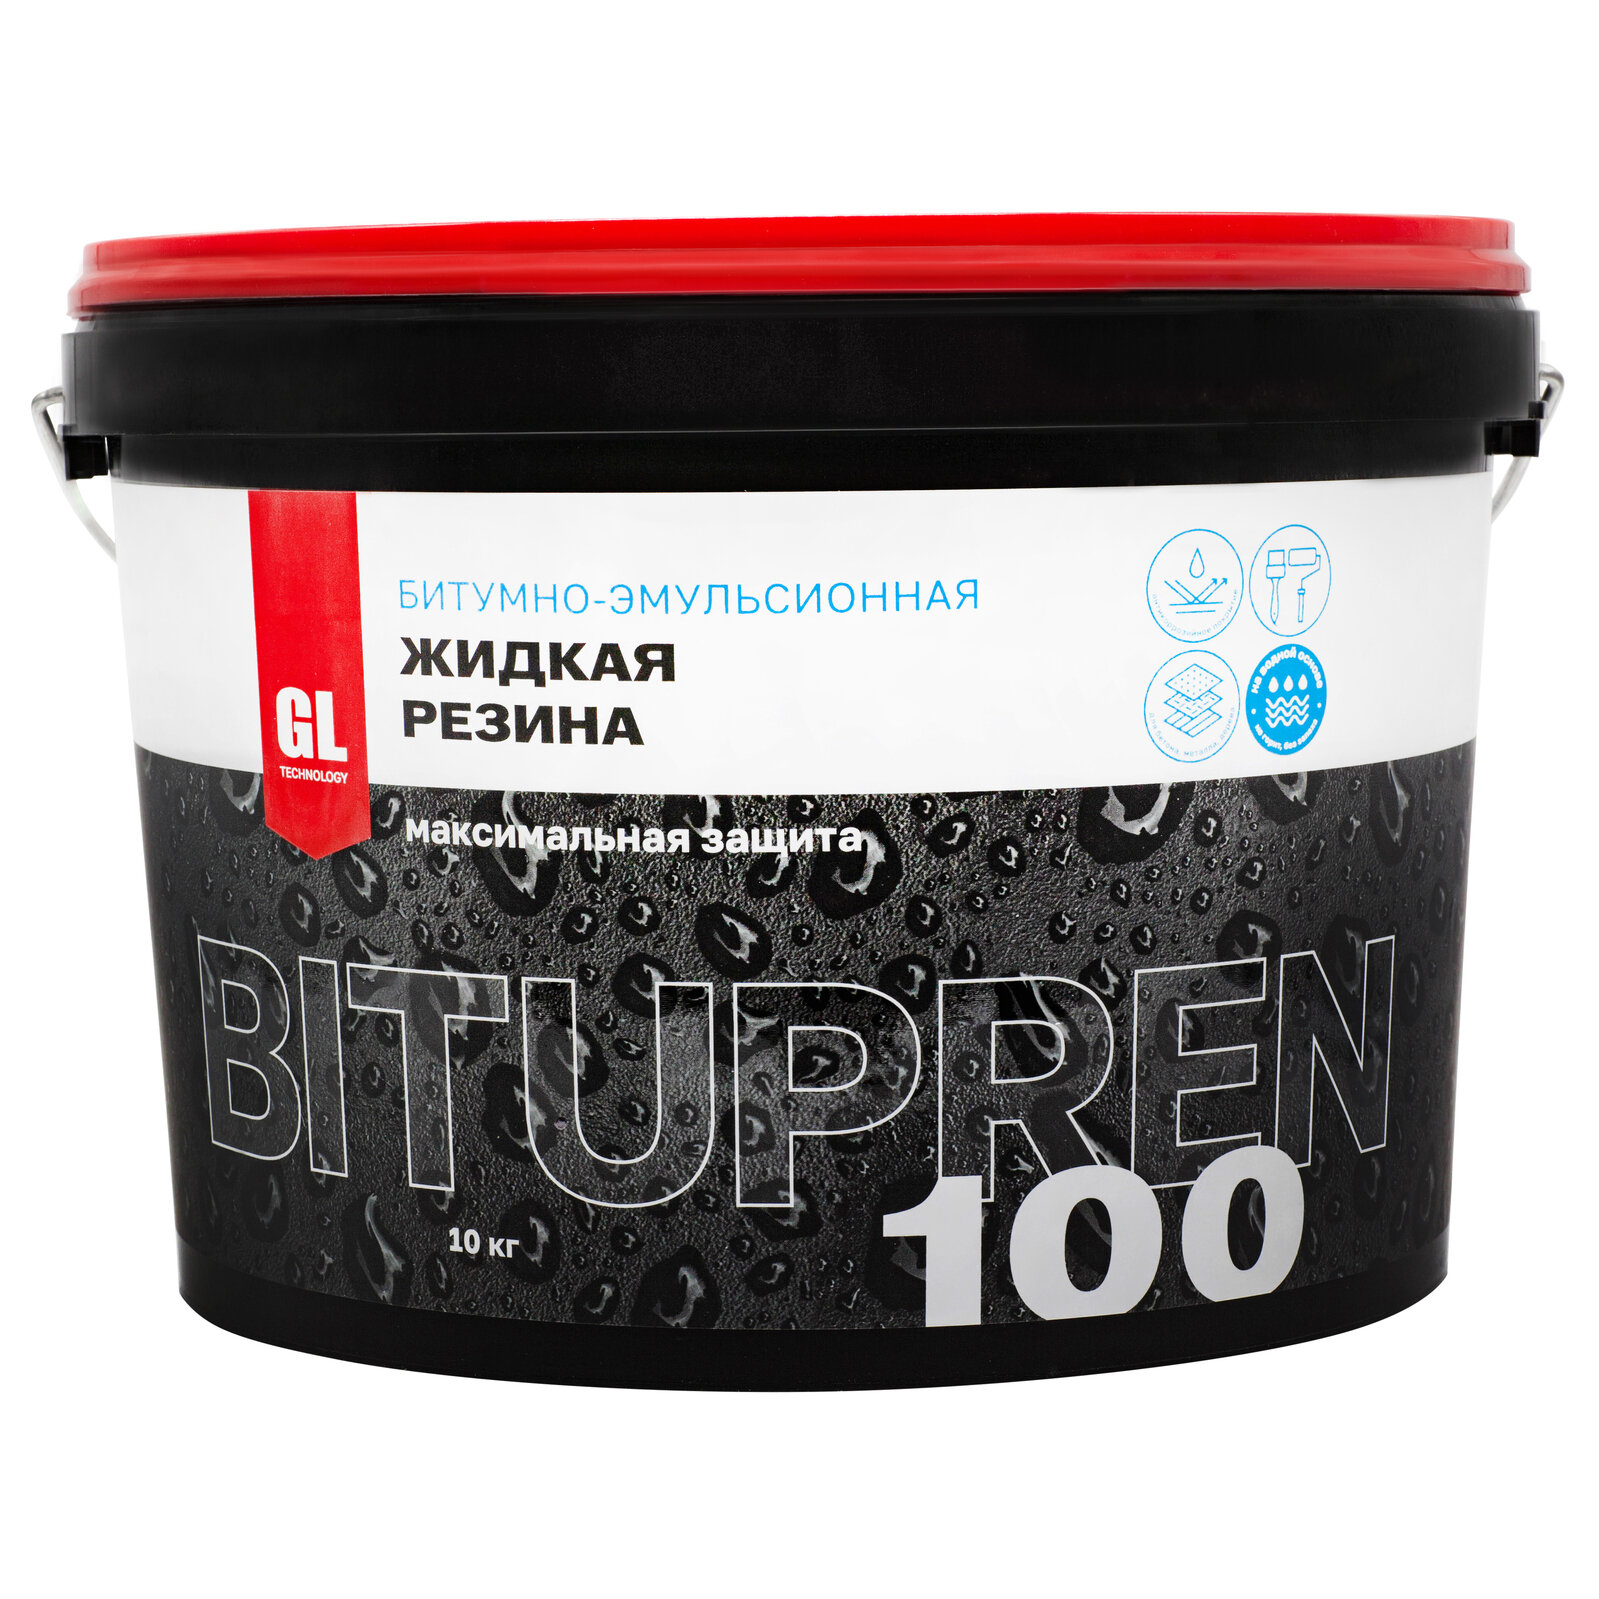 Жидкая резина битумная Bitupren 100, 10 кг, В100-10